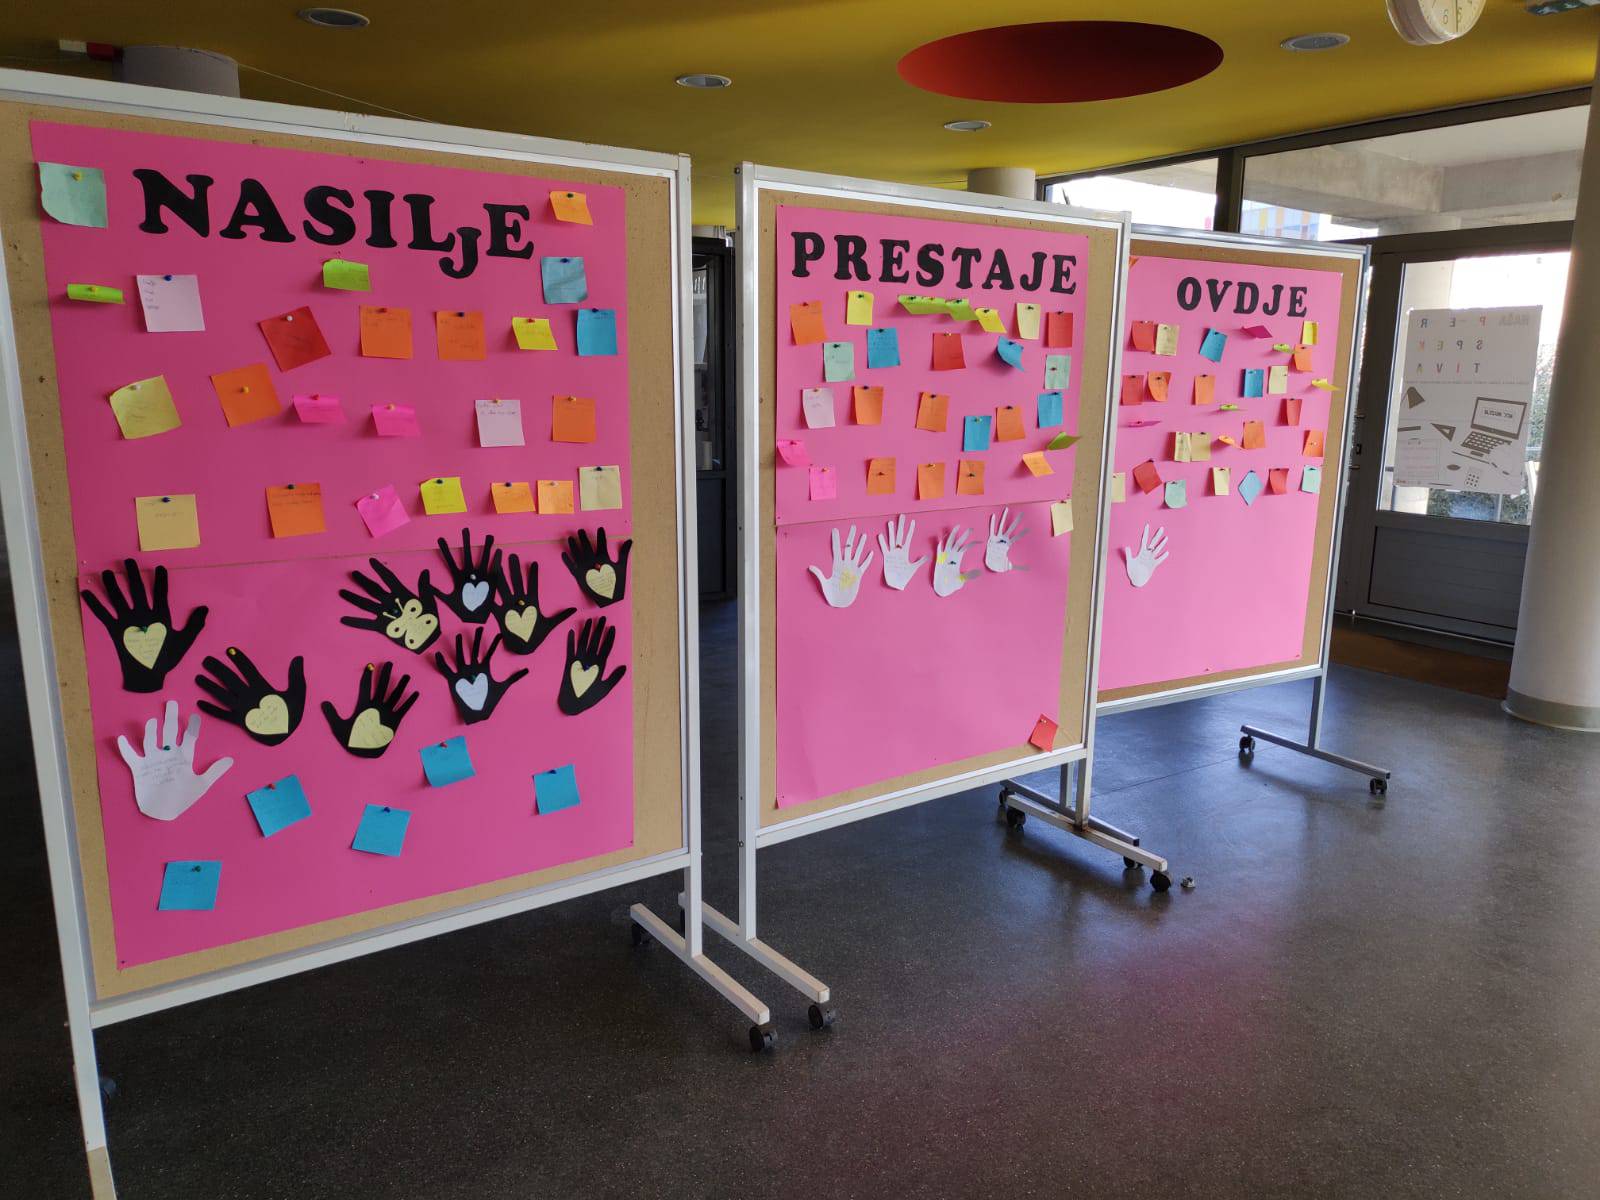 I Hrvatska nosi ružičasto: Svi su protiv vršnjačkog nasilja